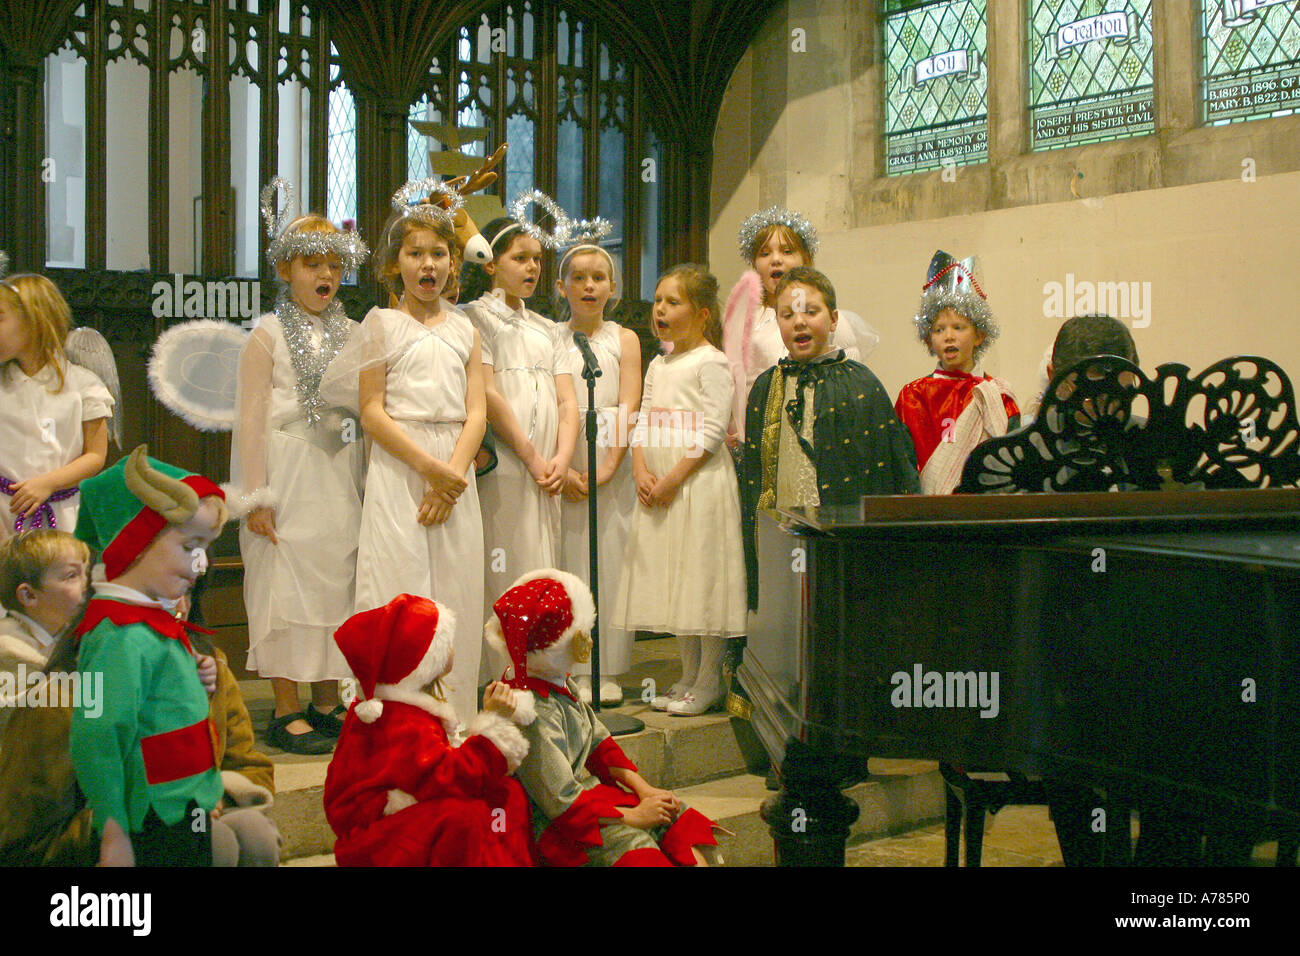 Célébration de l'école primaire de Noël avec les enfants déguisés et le chant de noël à l'église Banque D'Images